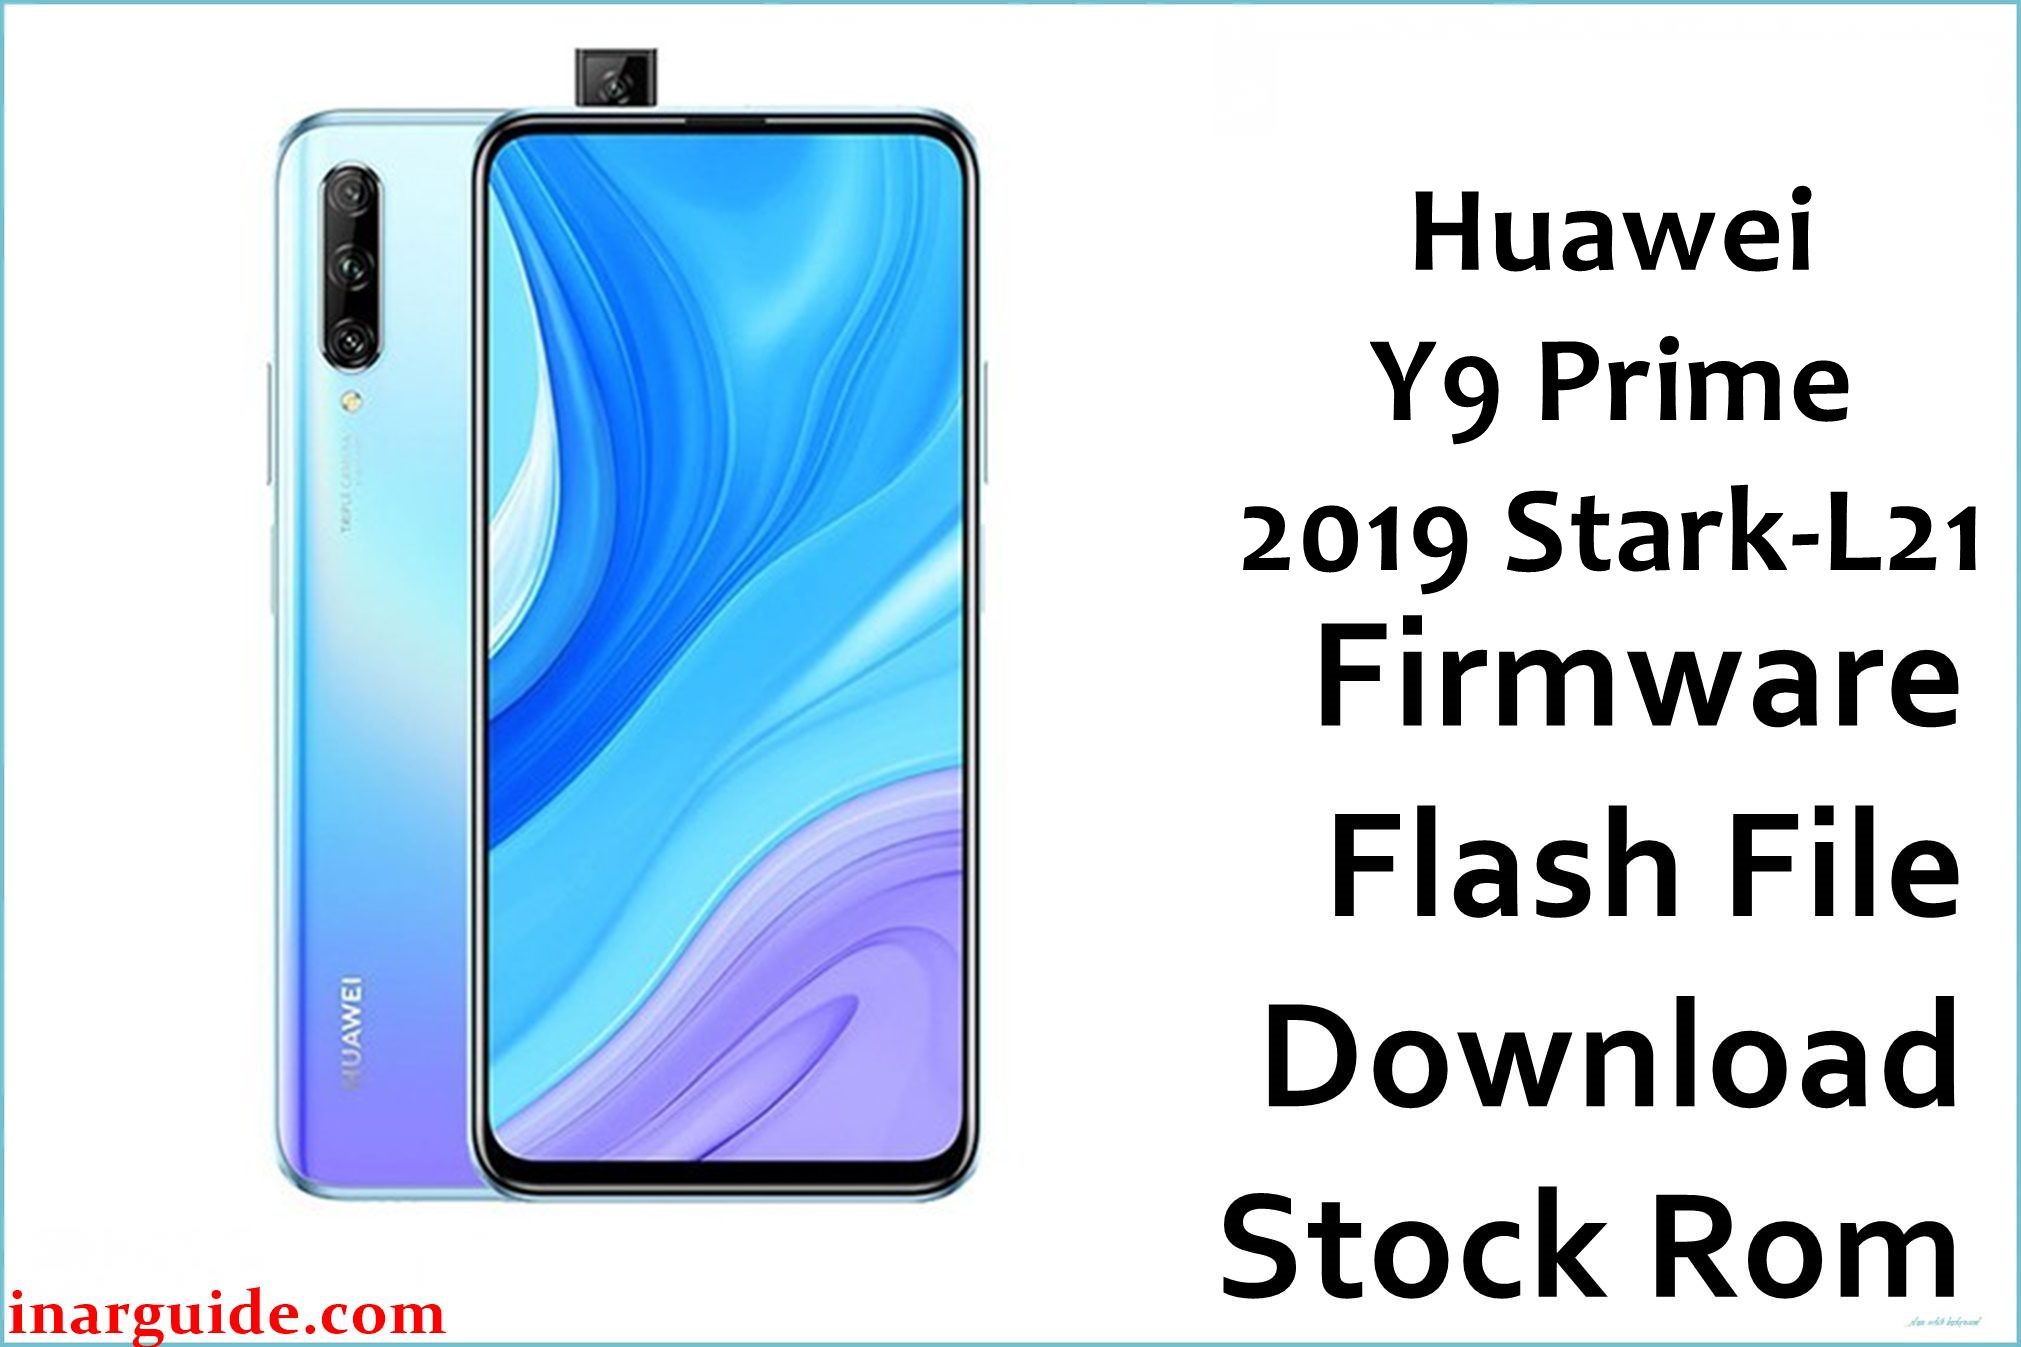 Huawei Y9 Prime 2019 Stark L21